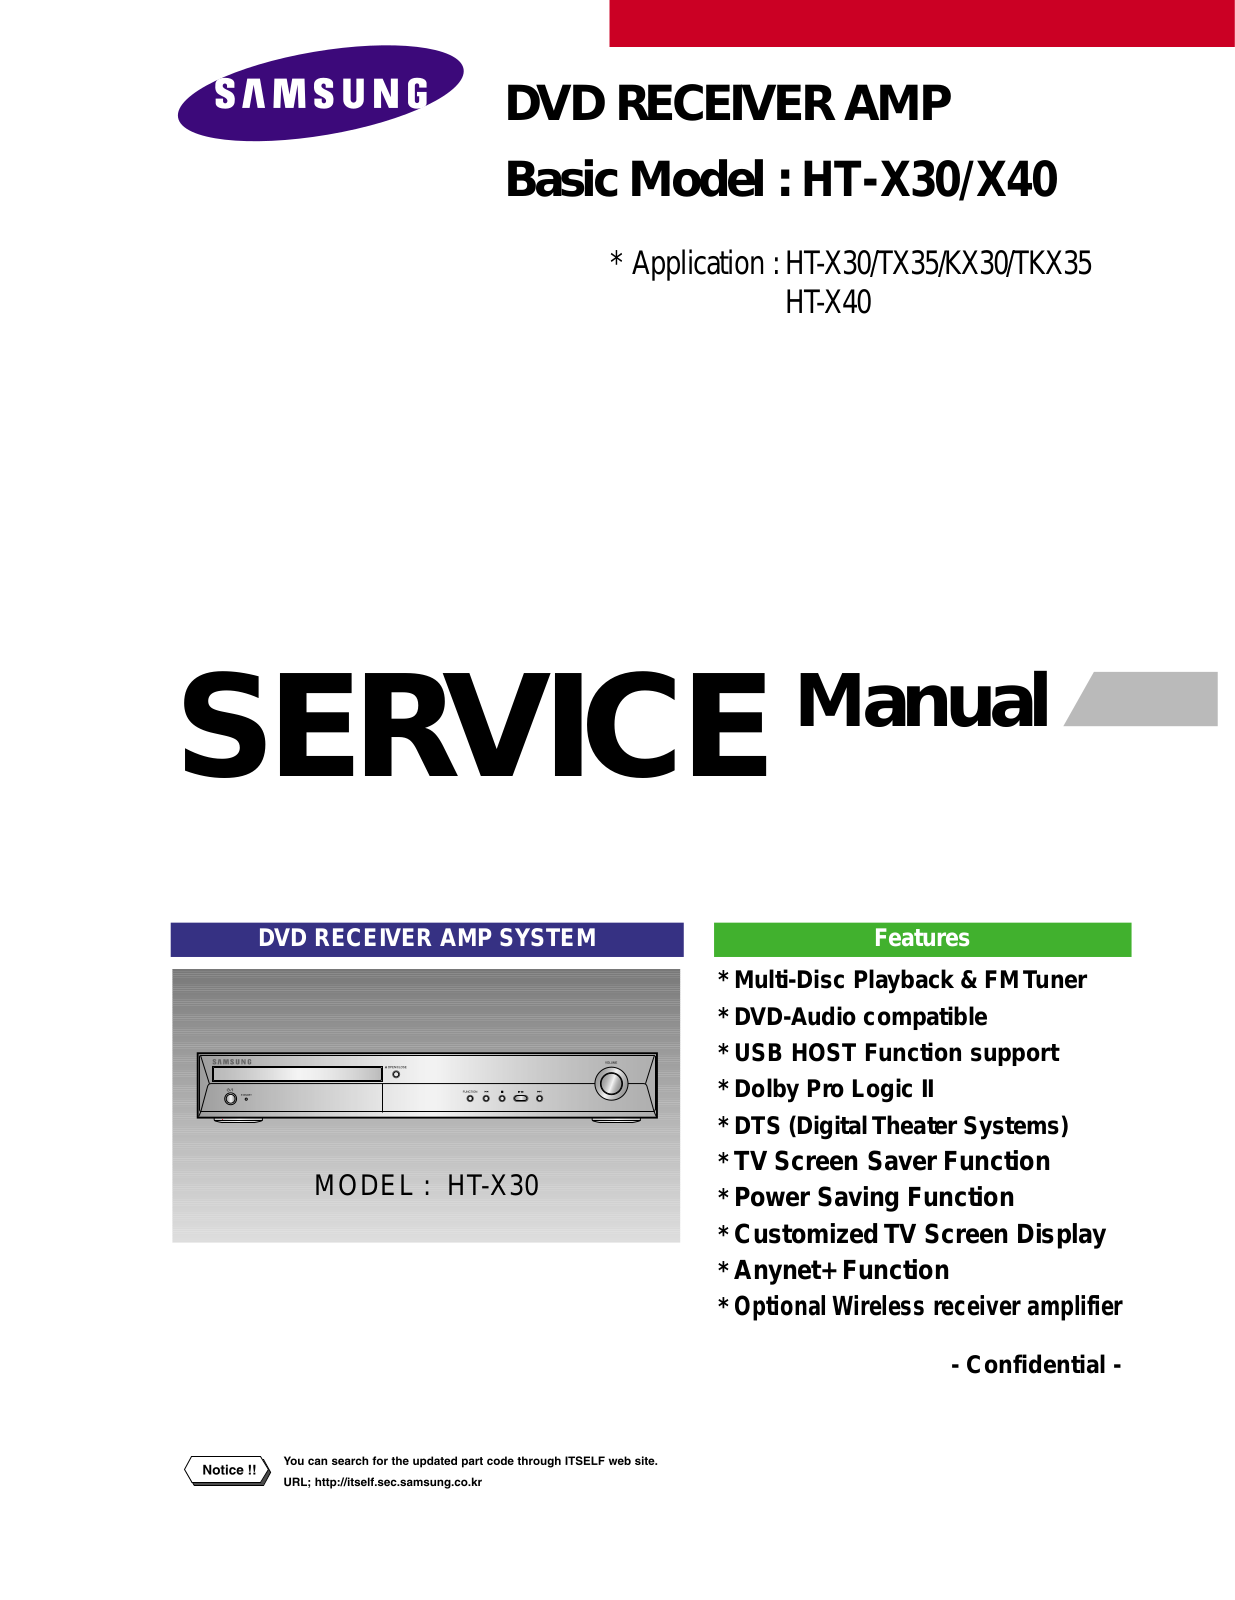 SAMSUNG HT-X30, HT-TX35, HT-KX30, HT-TKX35, HT-X40 Service Manual